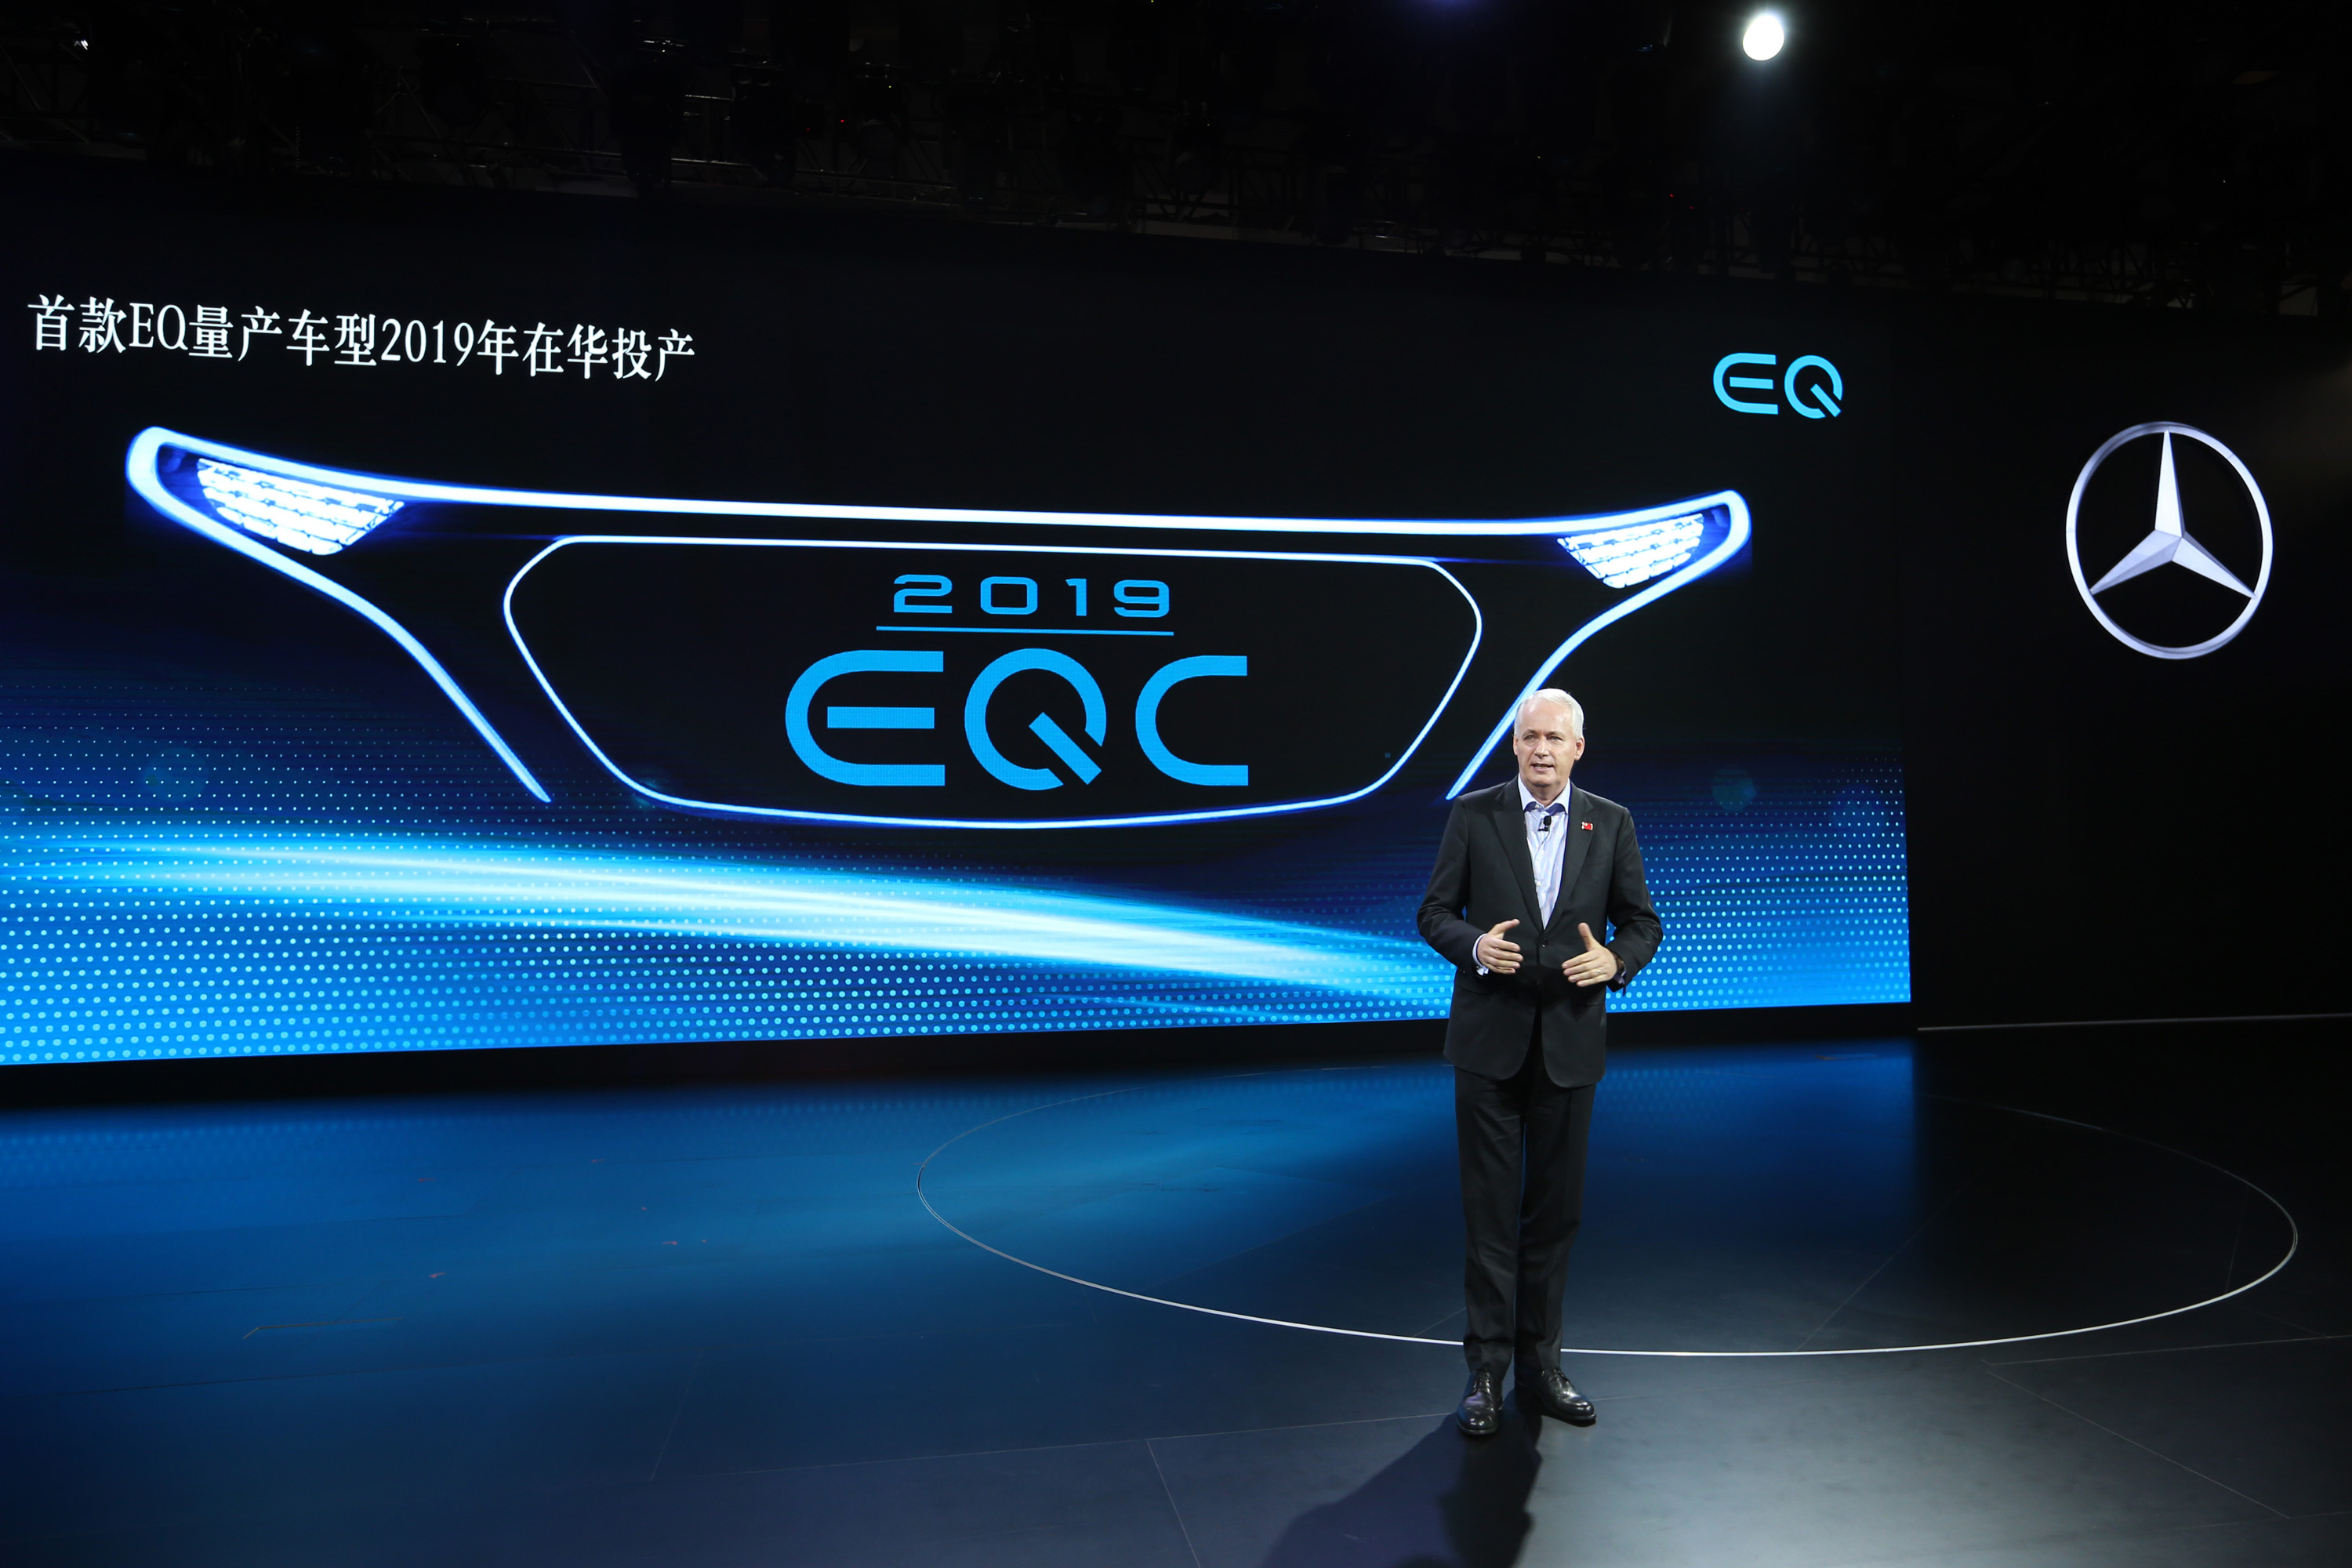 01. 戴姆勒股份公司董事会成员、负责大中华区业务的唐仕凯先生宣布首款EQ量产车型EQC将于2019年在华投产.jpg